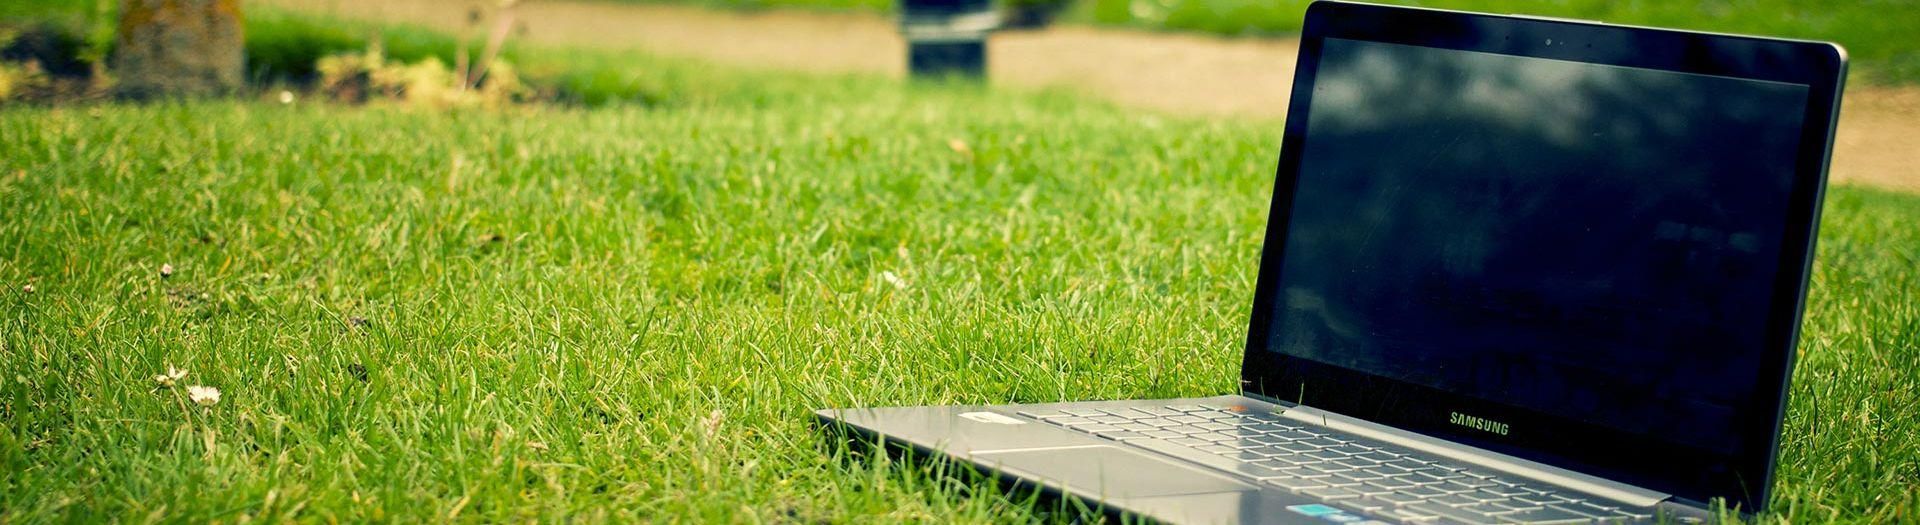 laptop-notebook-grass-meadow-9b558d75 Direct | BRIGHT Software B.V.